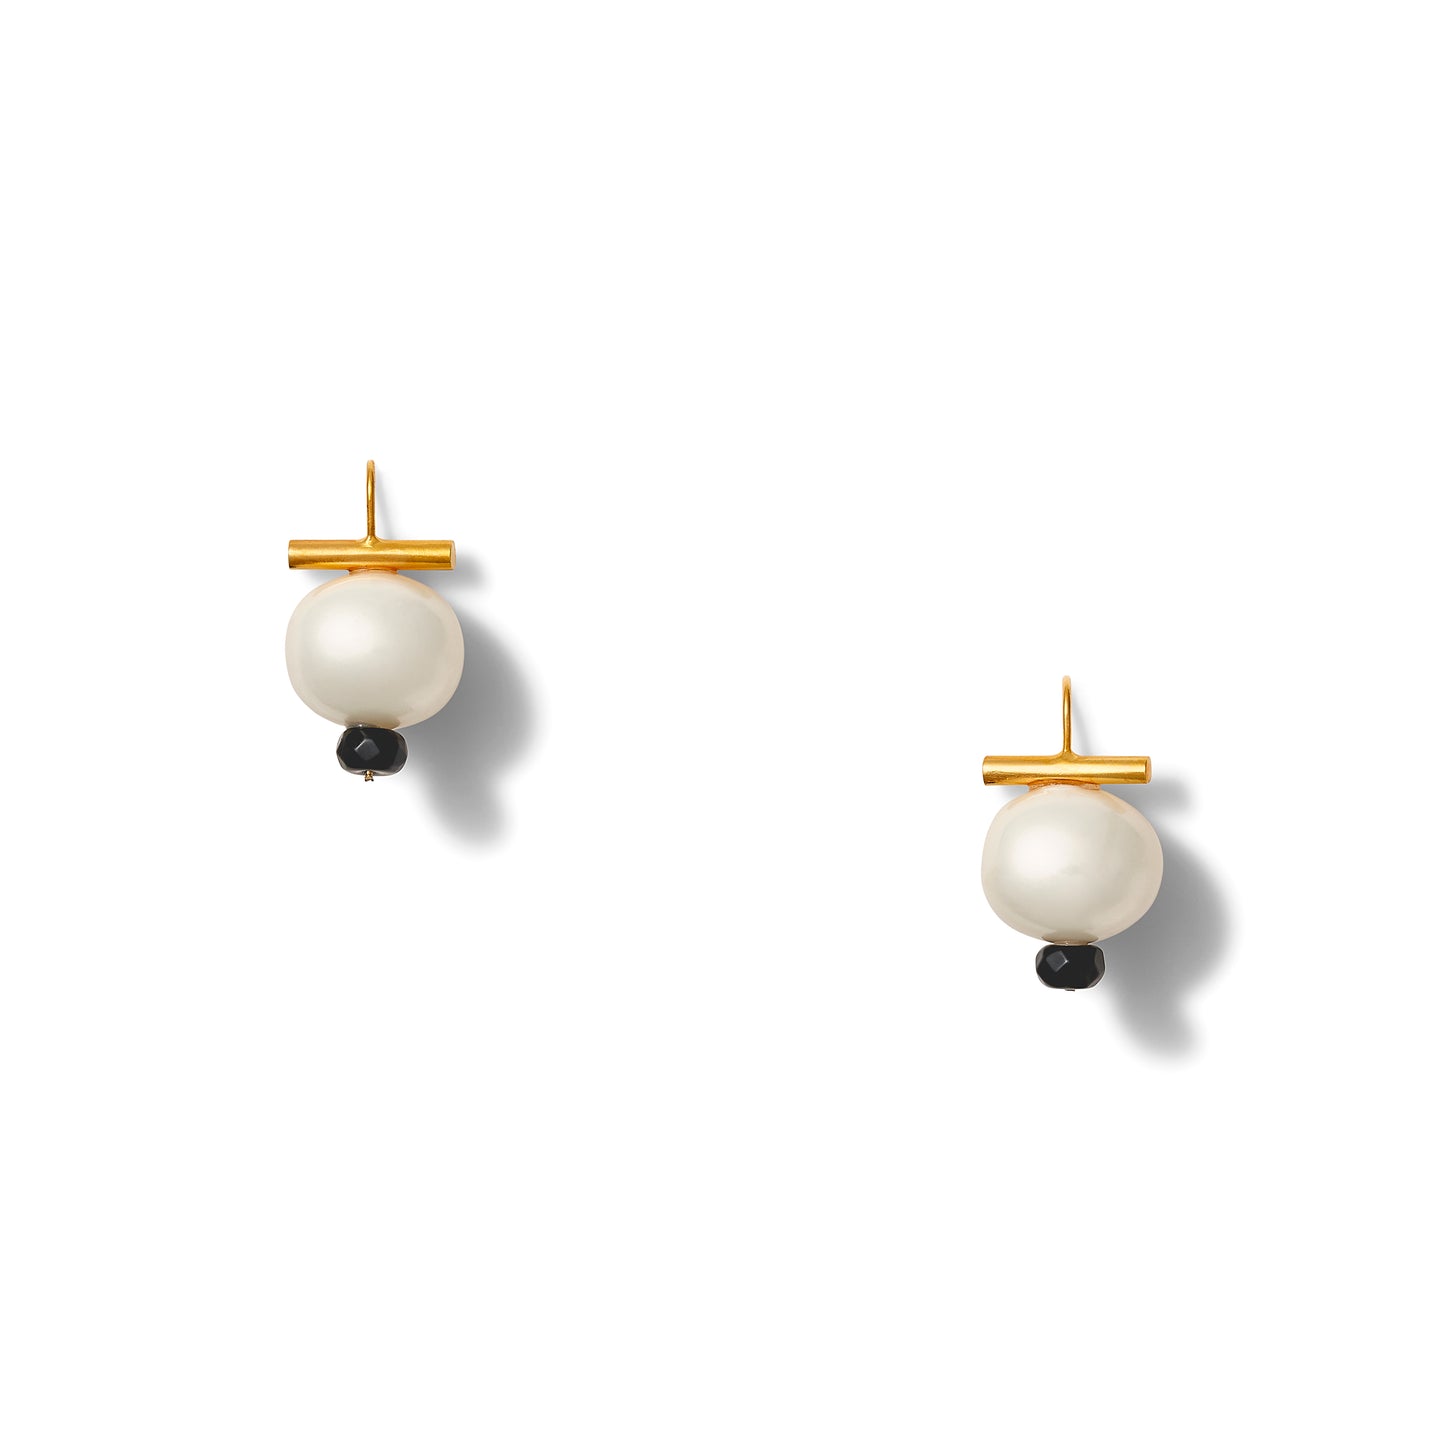 Tuxedo Pebble Dot earrings